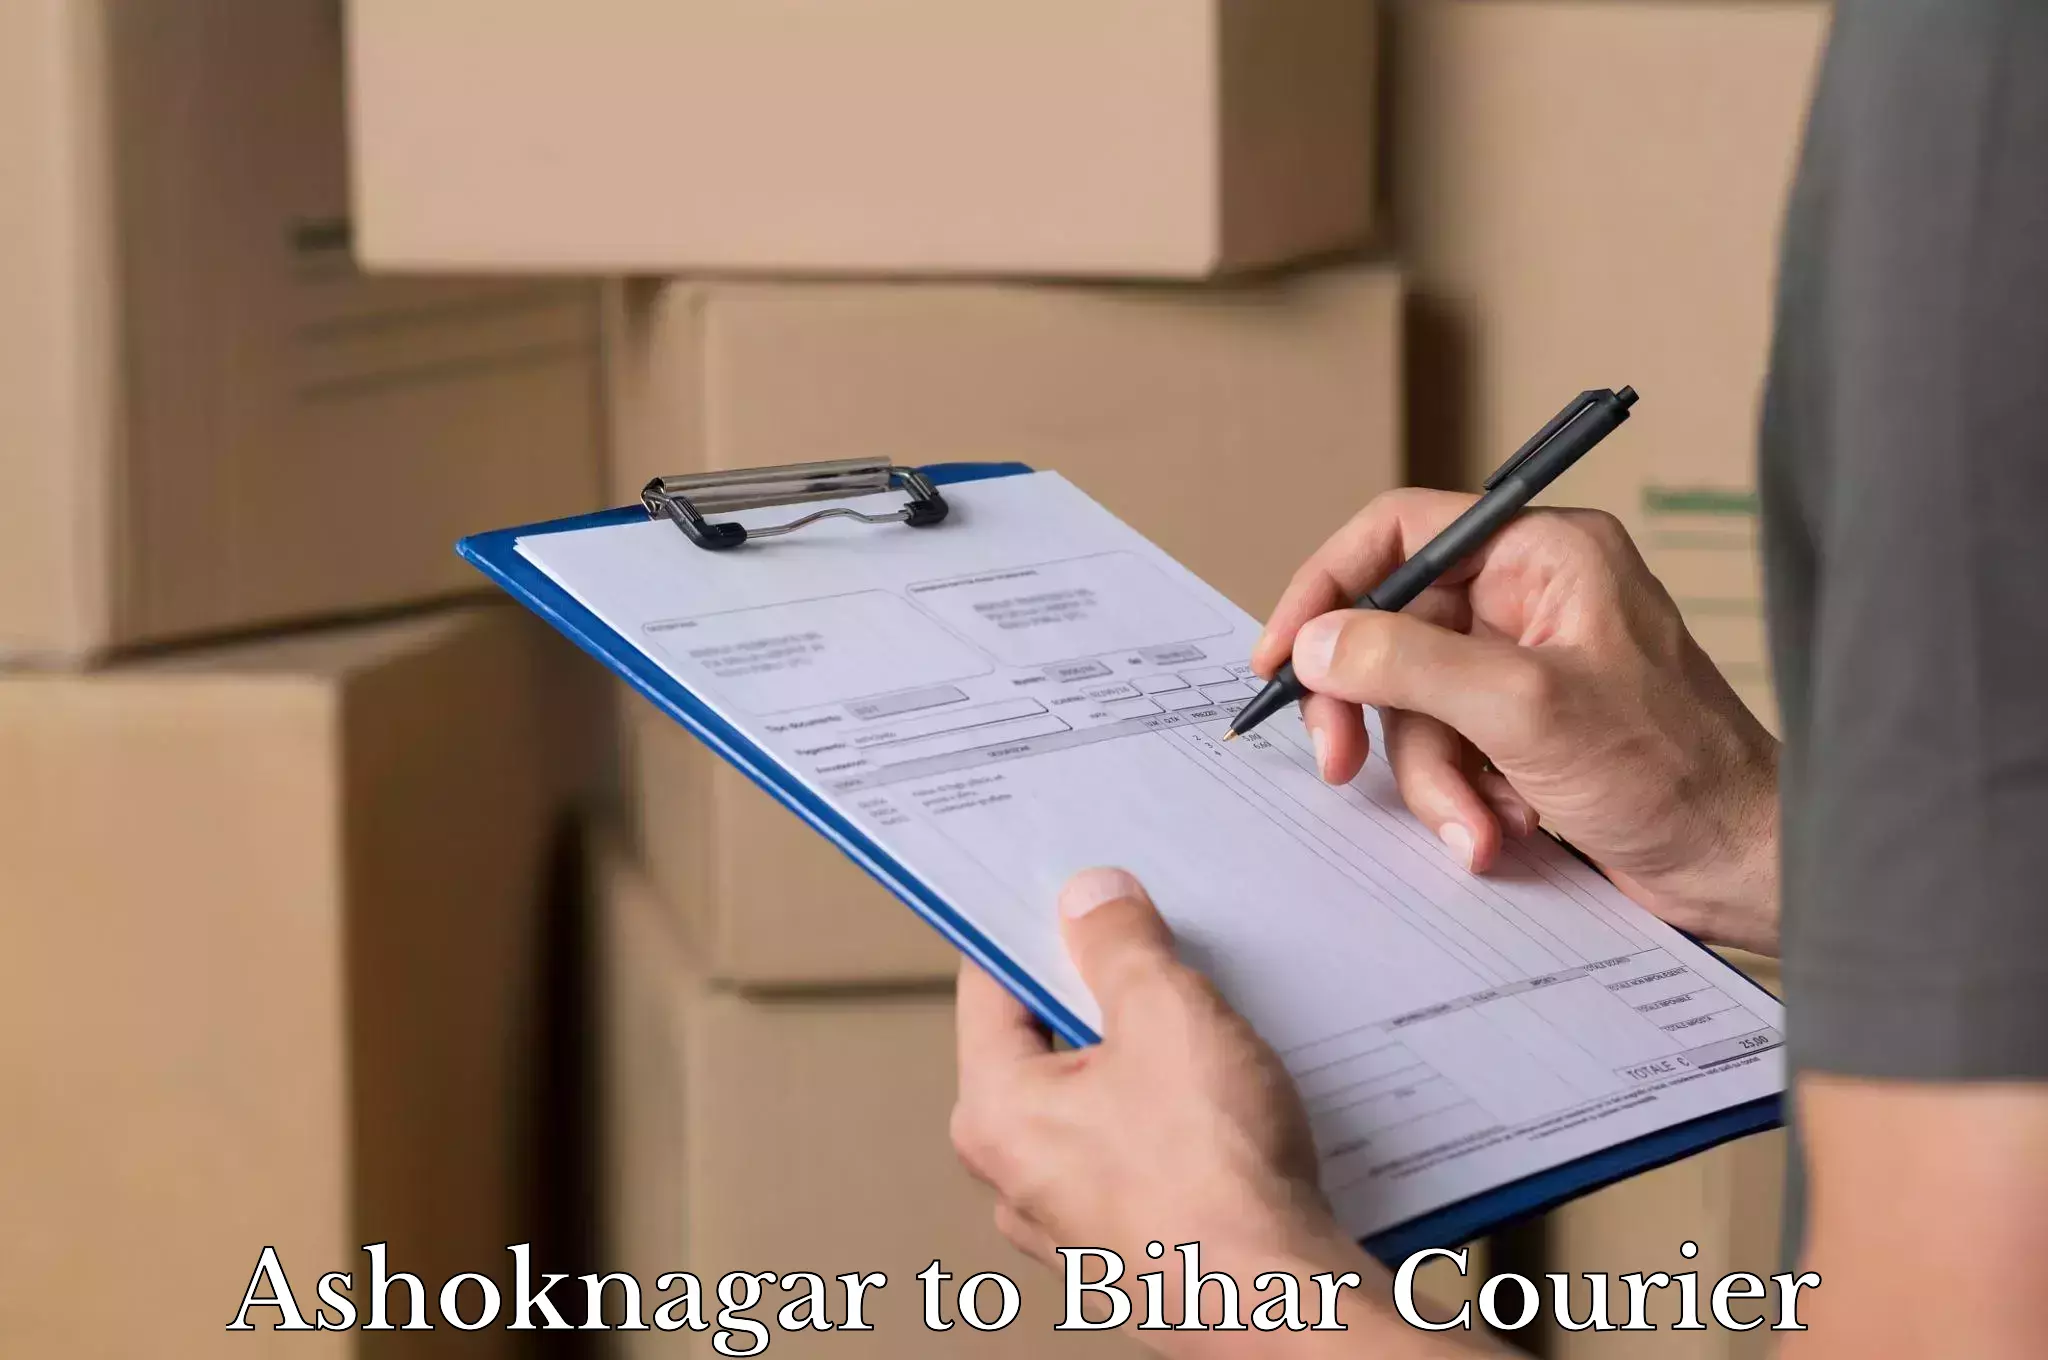 Baggage transport updates Ashoknagar to Bihar